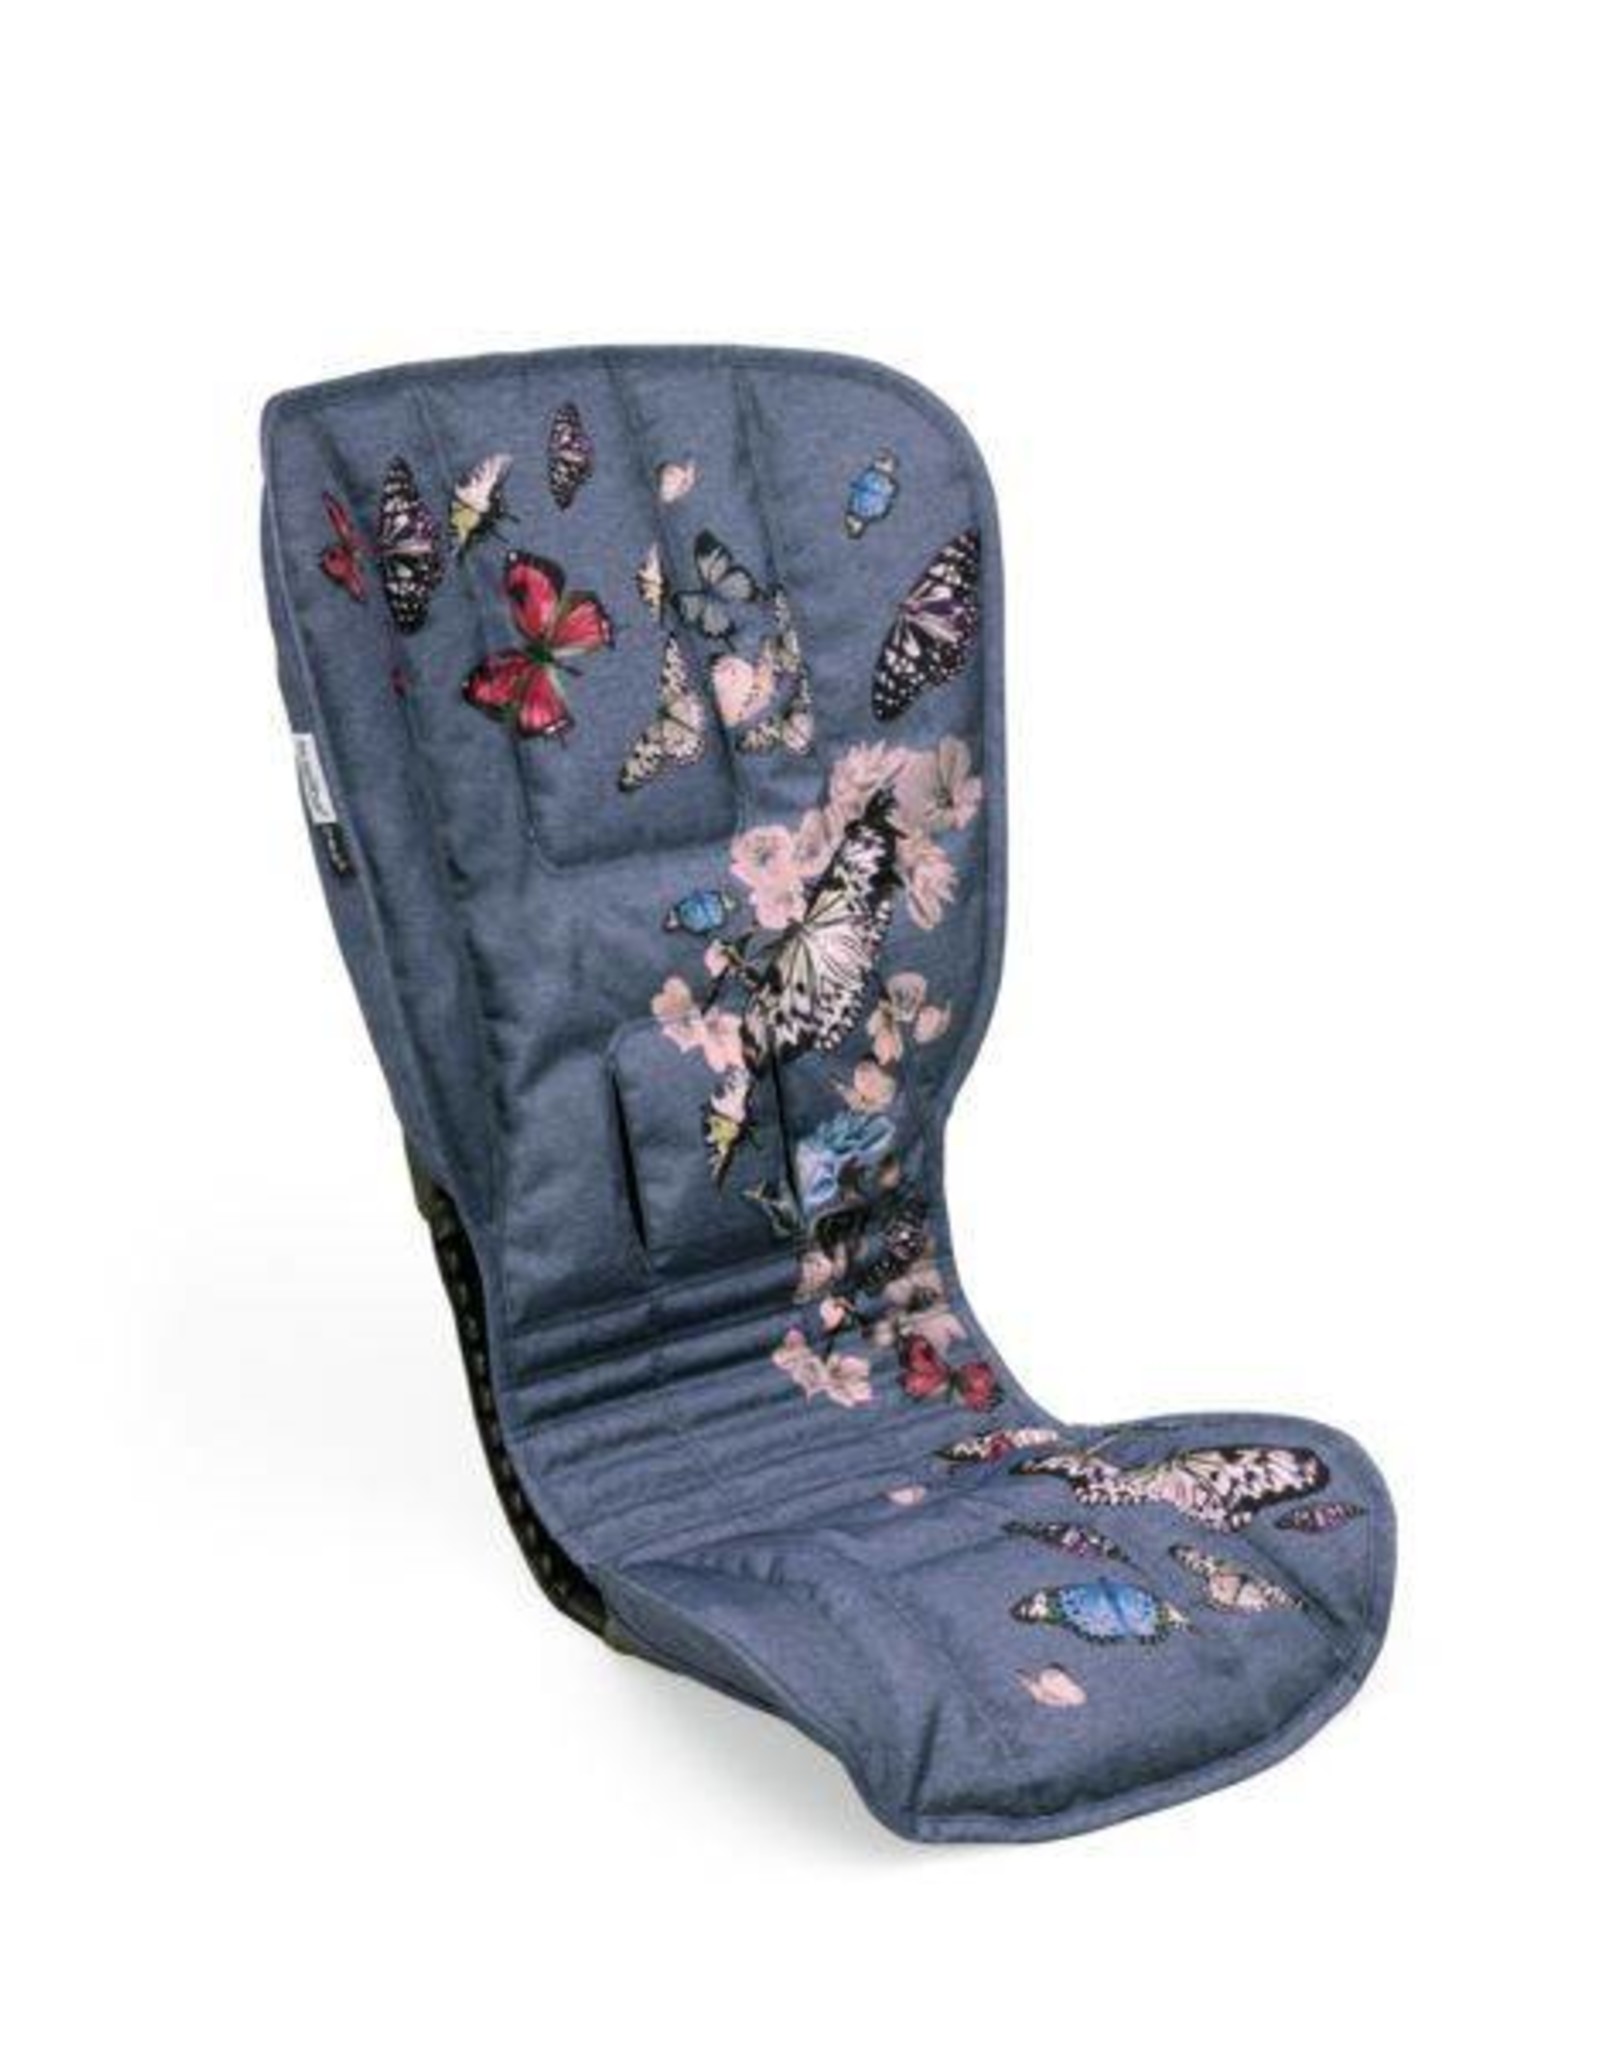 bugaboo bee 5 seat fabric